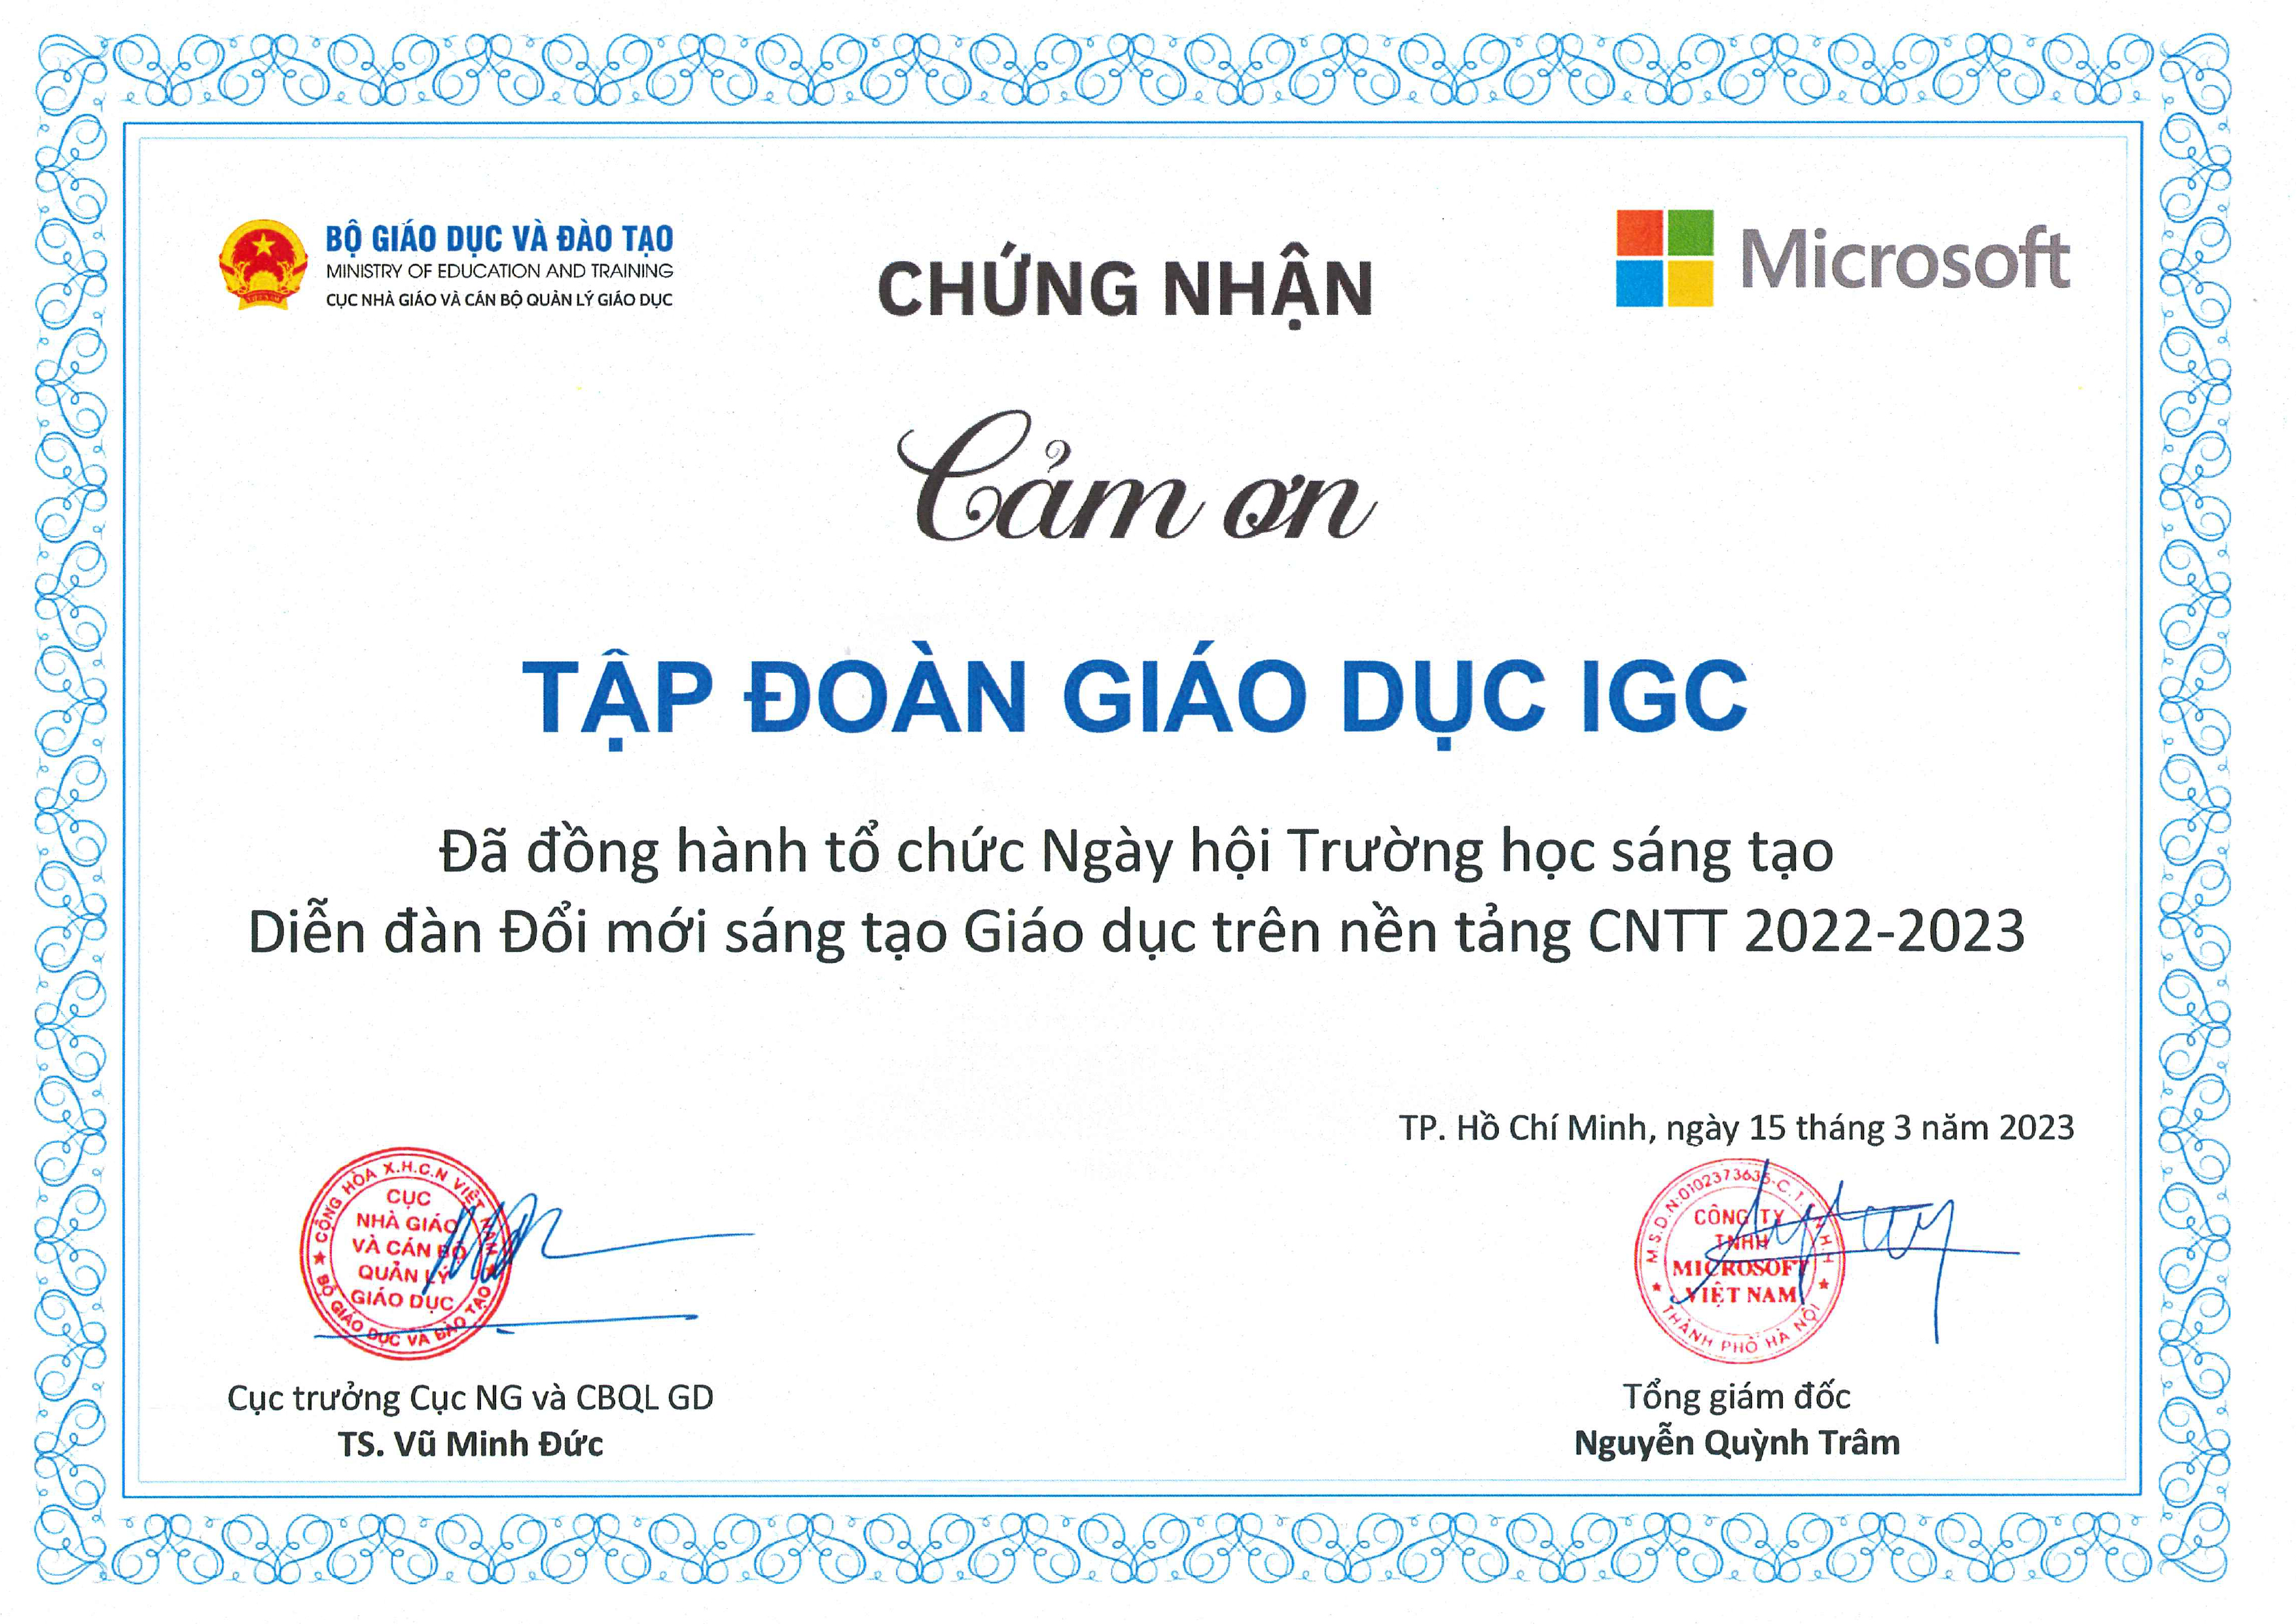 IGC đồng hành cùng Sở GD&ĐT tỉnh Đồng Nai và Microsoft tổ chức Ngày hội Trường học sáng tạo E2 Việt Nam 2022 - 2023